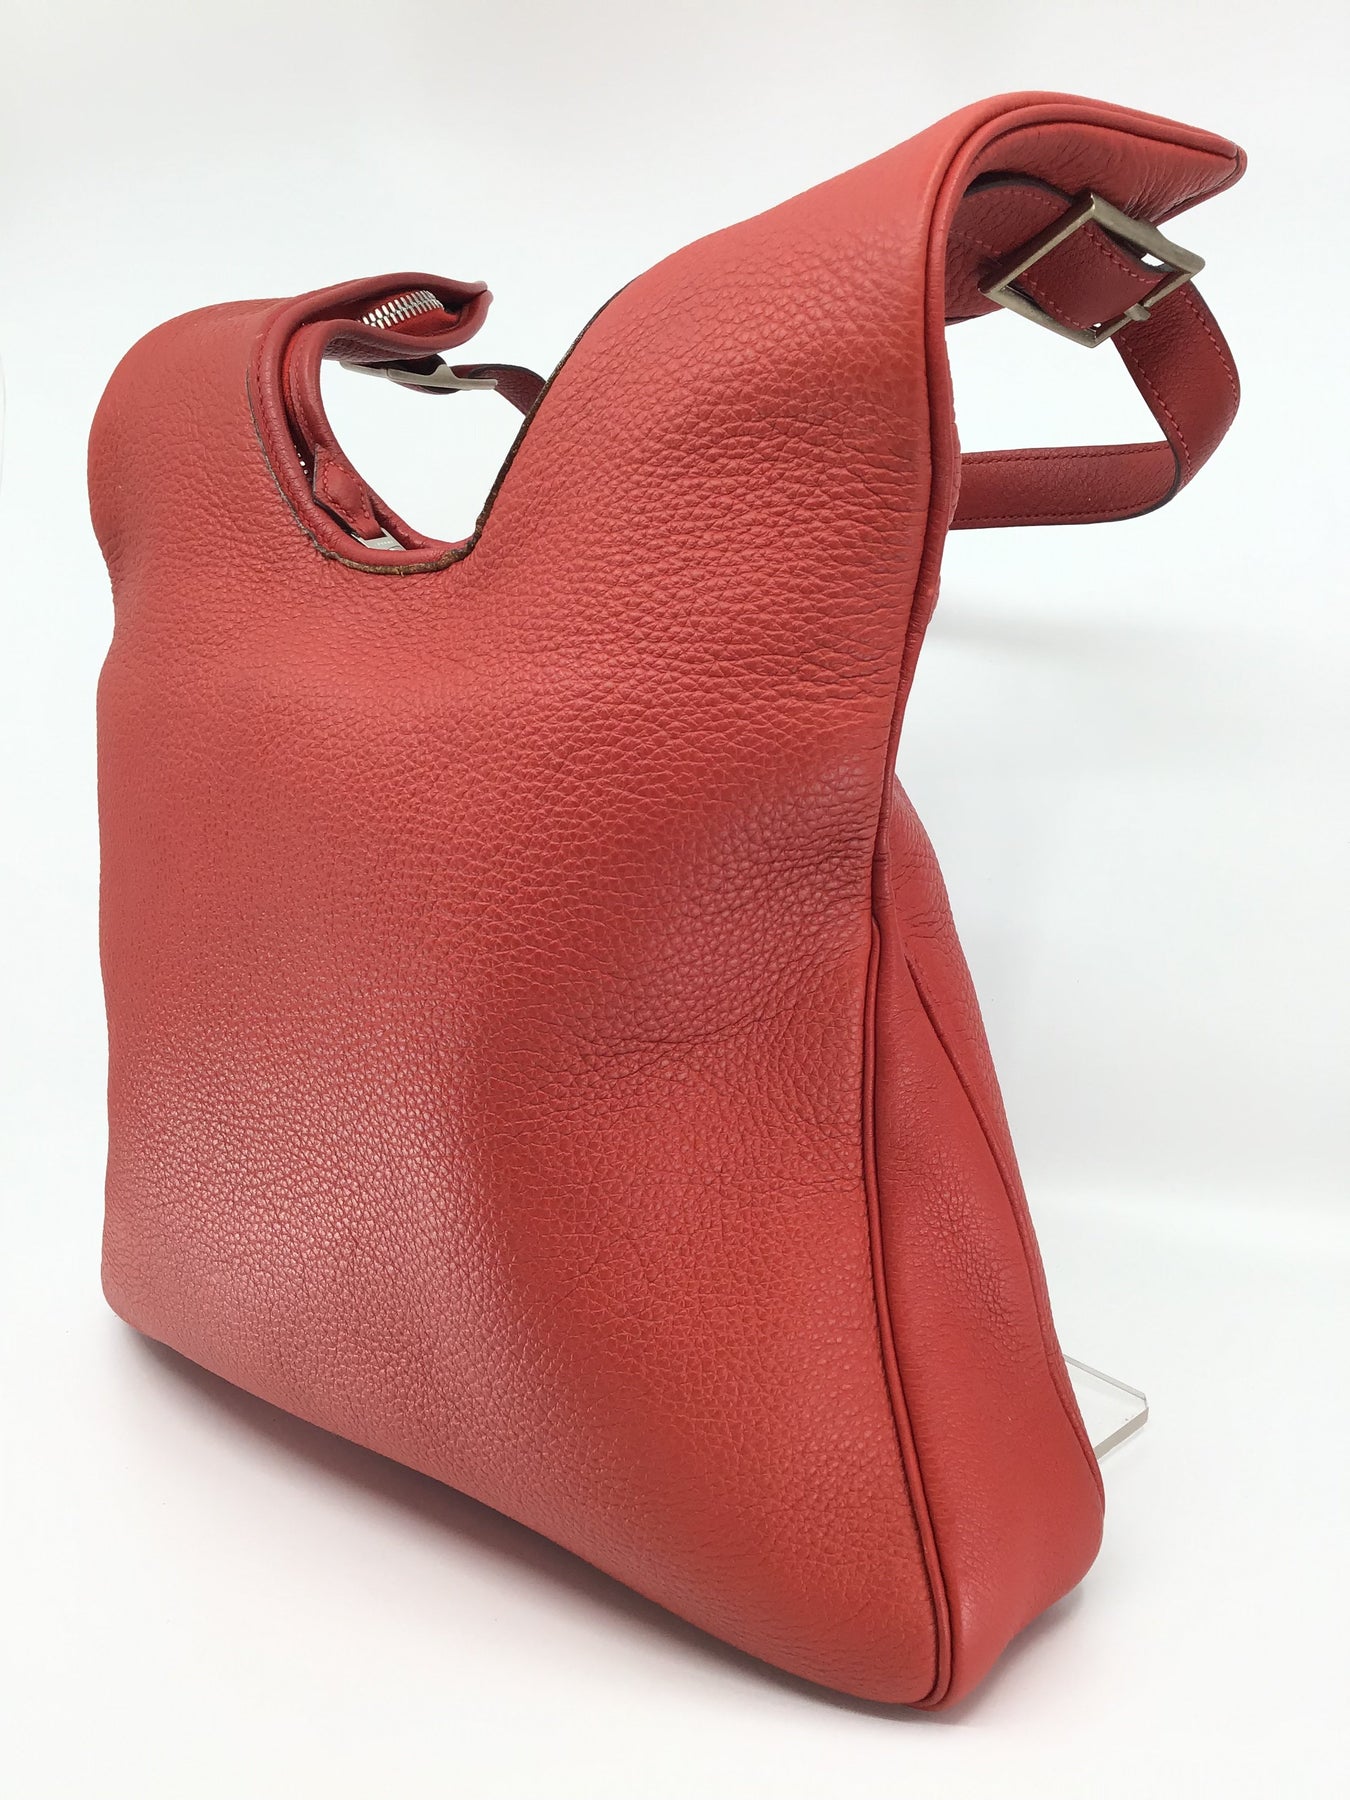 Hermès Massai Handbag 277560